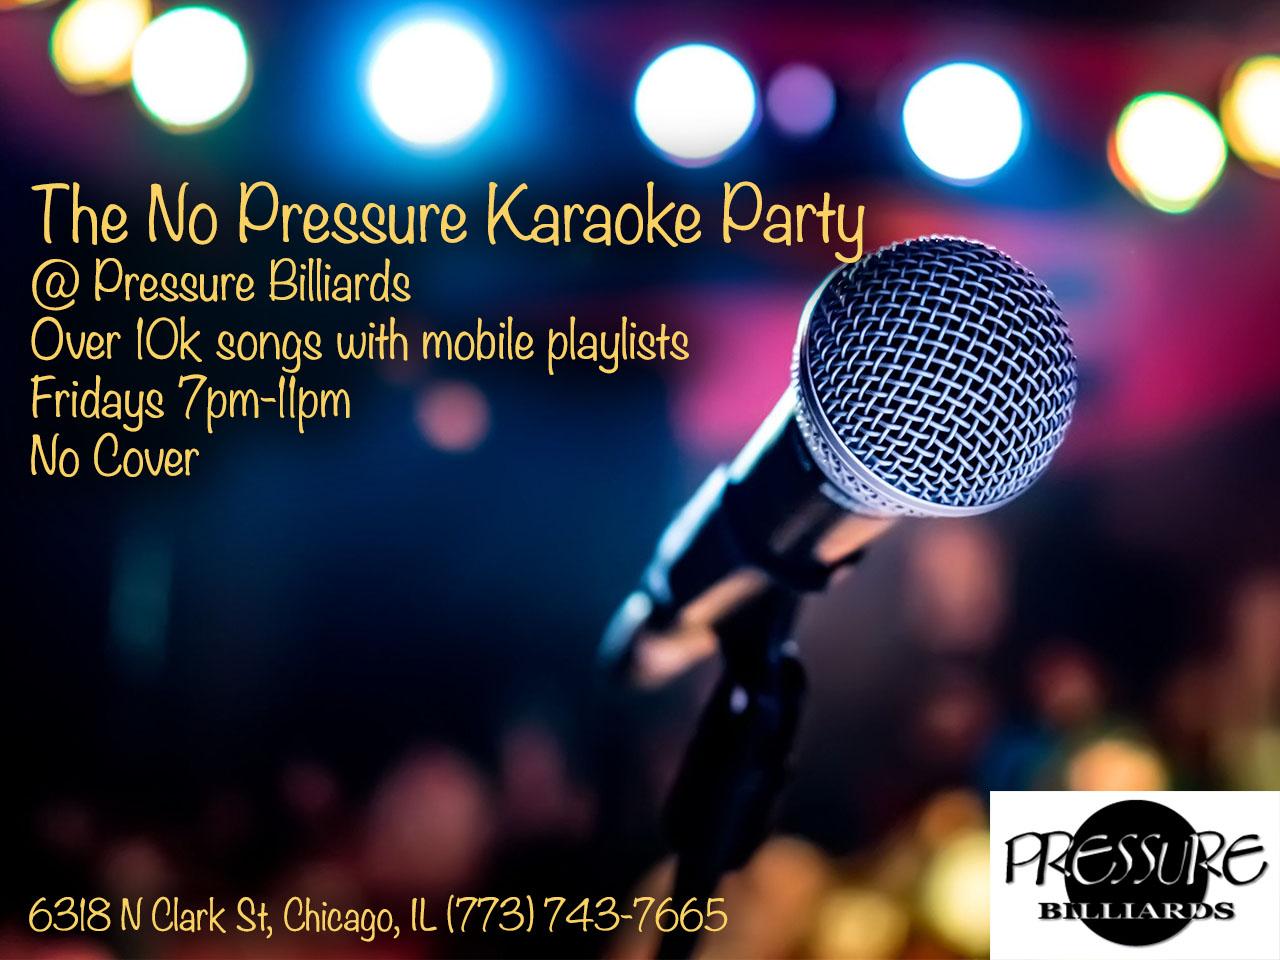 Pressure Karaoke Party